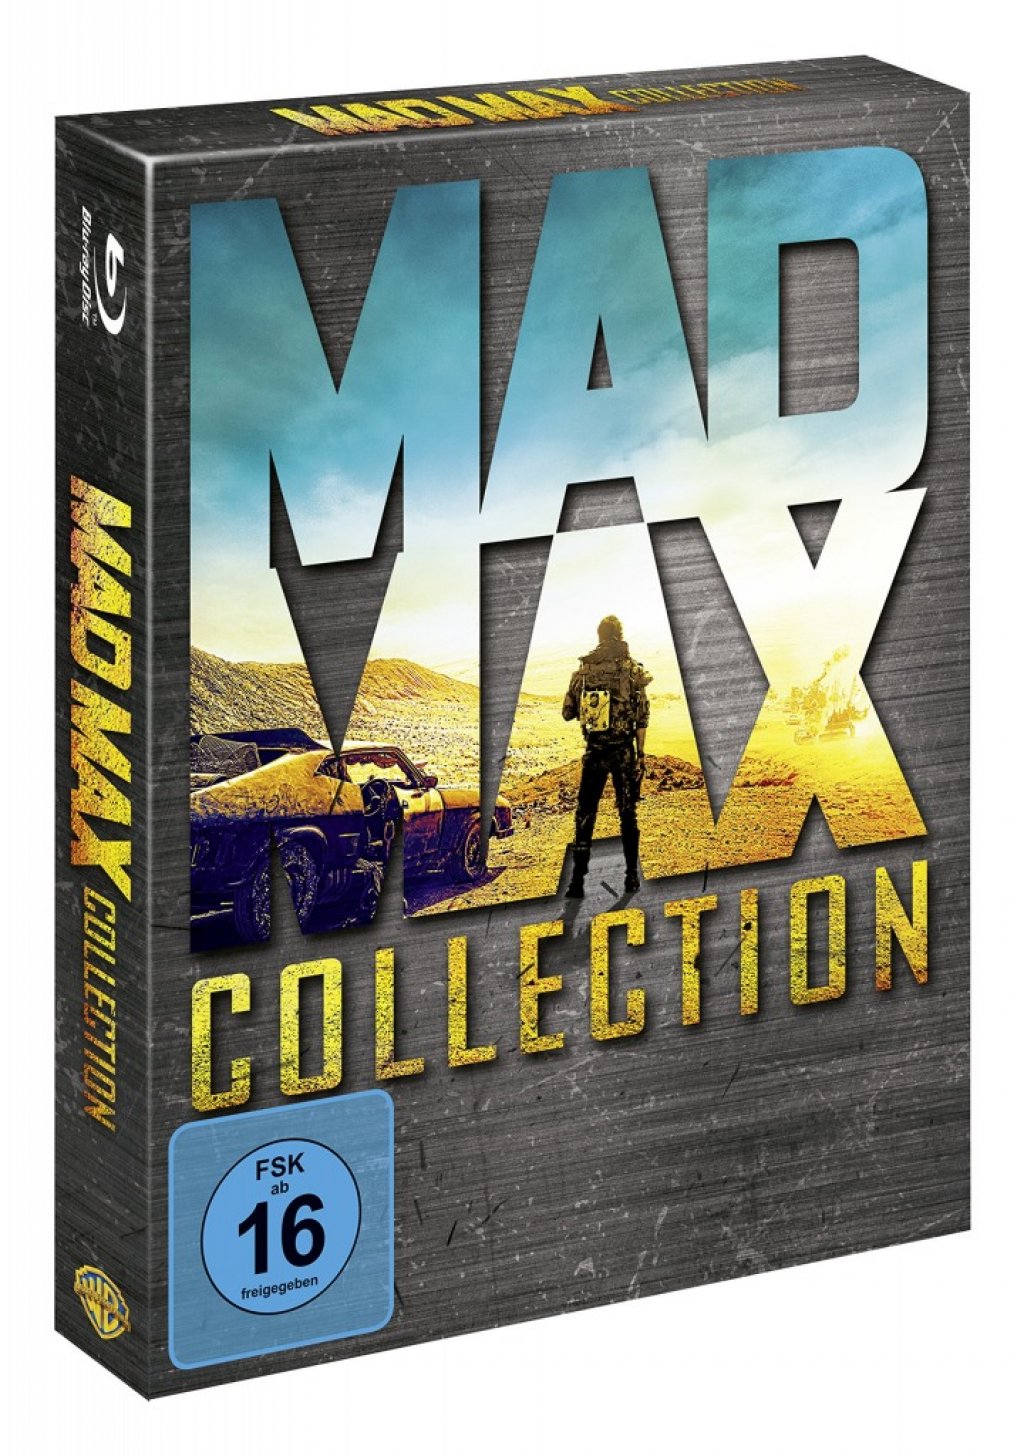 Безумный Макс DVD. Безумный Макс Постер. Диск Blu-ray Безумный Макс дорога ярости. Mad Max High Octane collection. Max collection